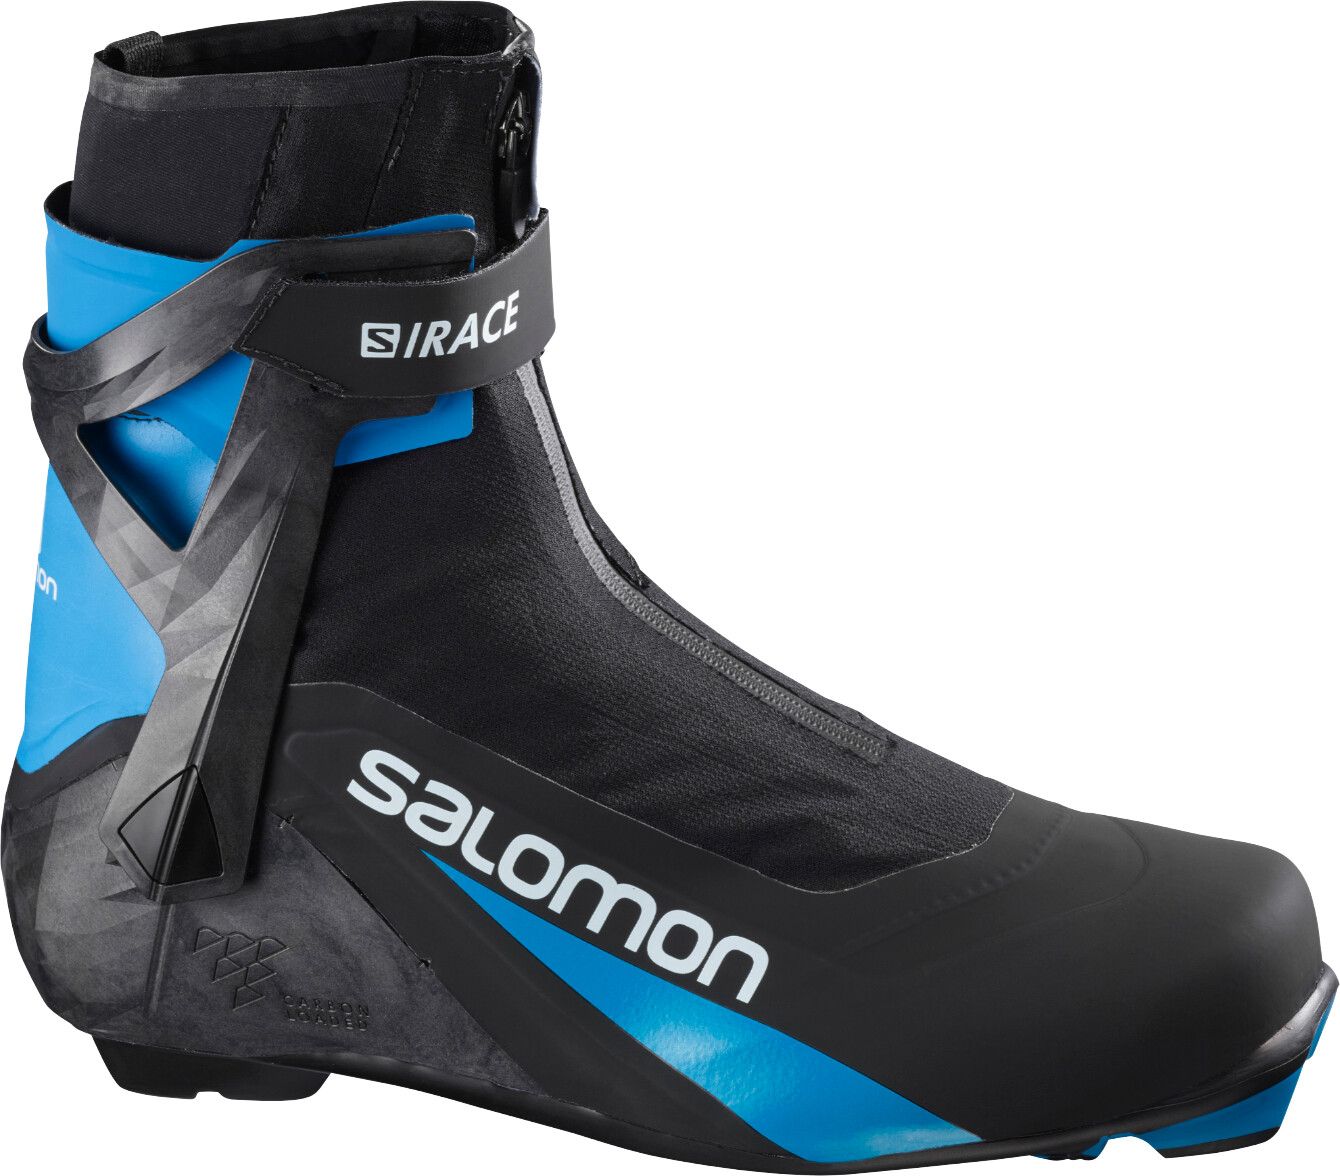 Salomon S/RACE CARBON SKATE PROLINK - Skating-Langlaufschuhe Herren